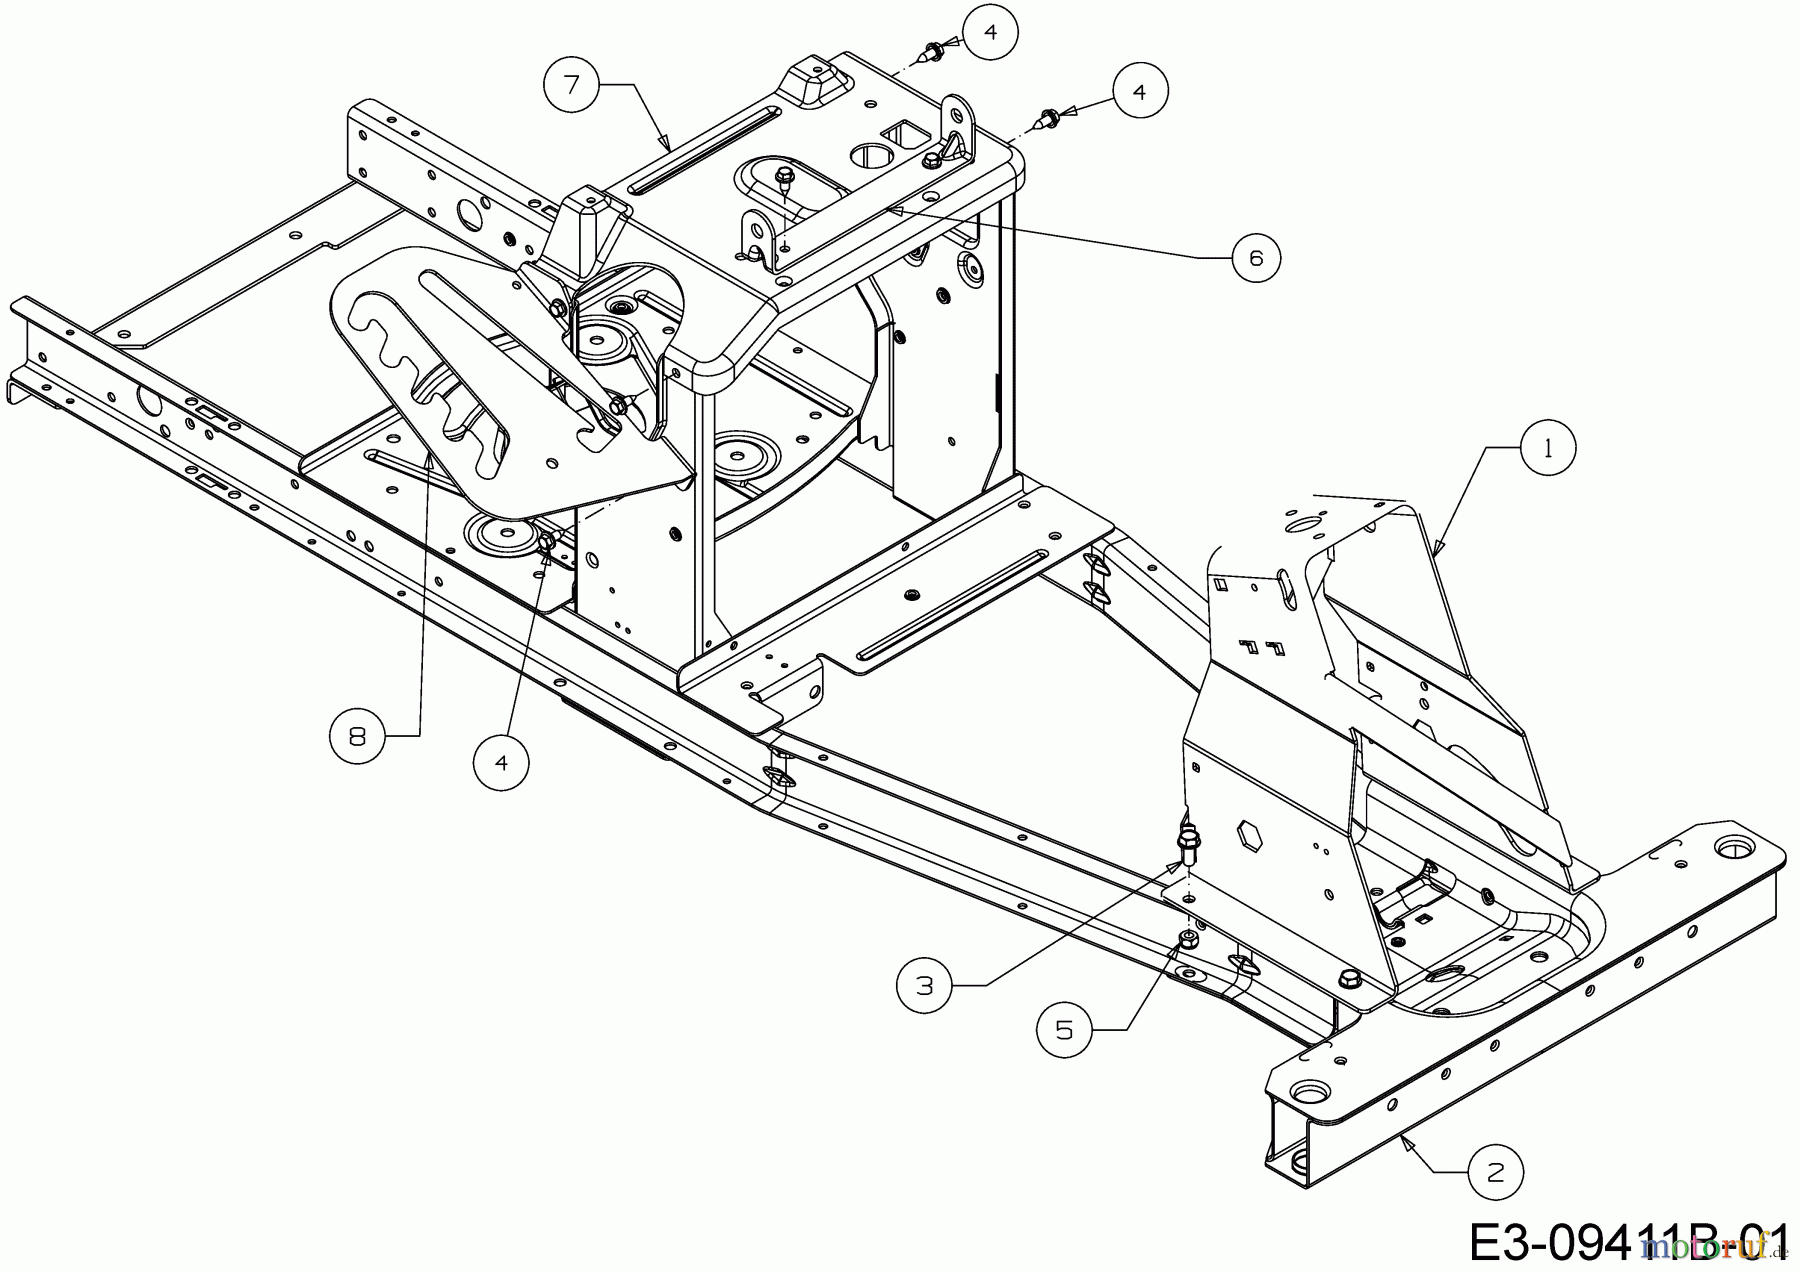  WOLF-Garten Expert Rasentraktoren Scooter Pro Hydro 13A221HD650  (2018) Rahmen